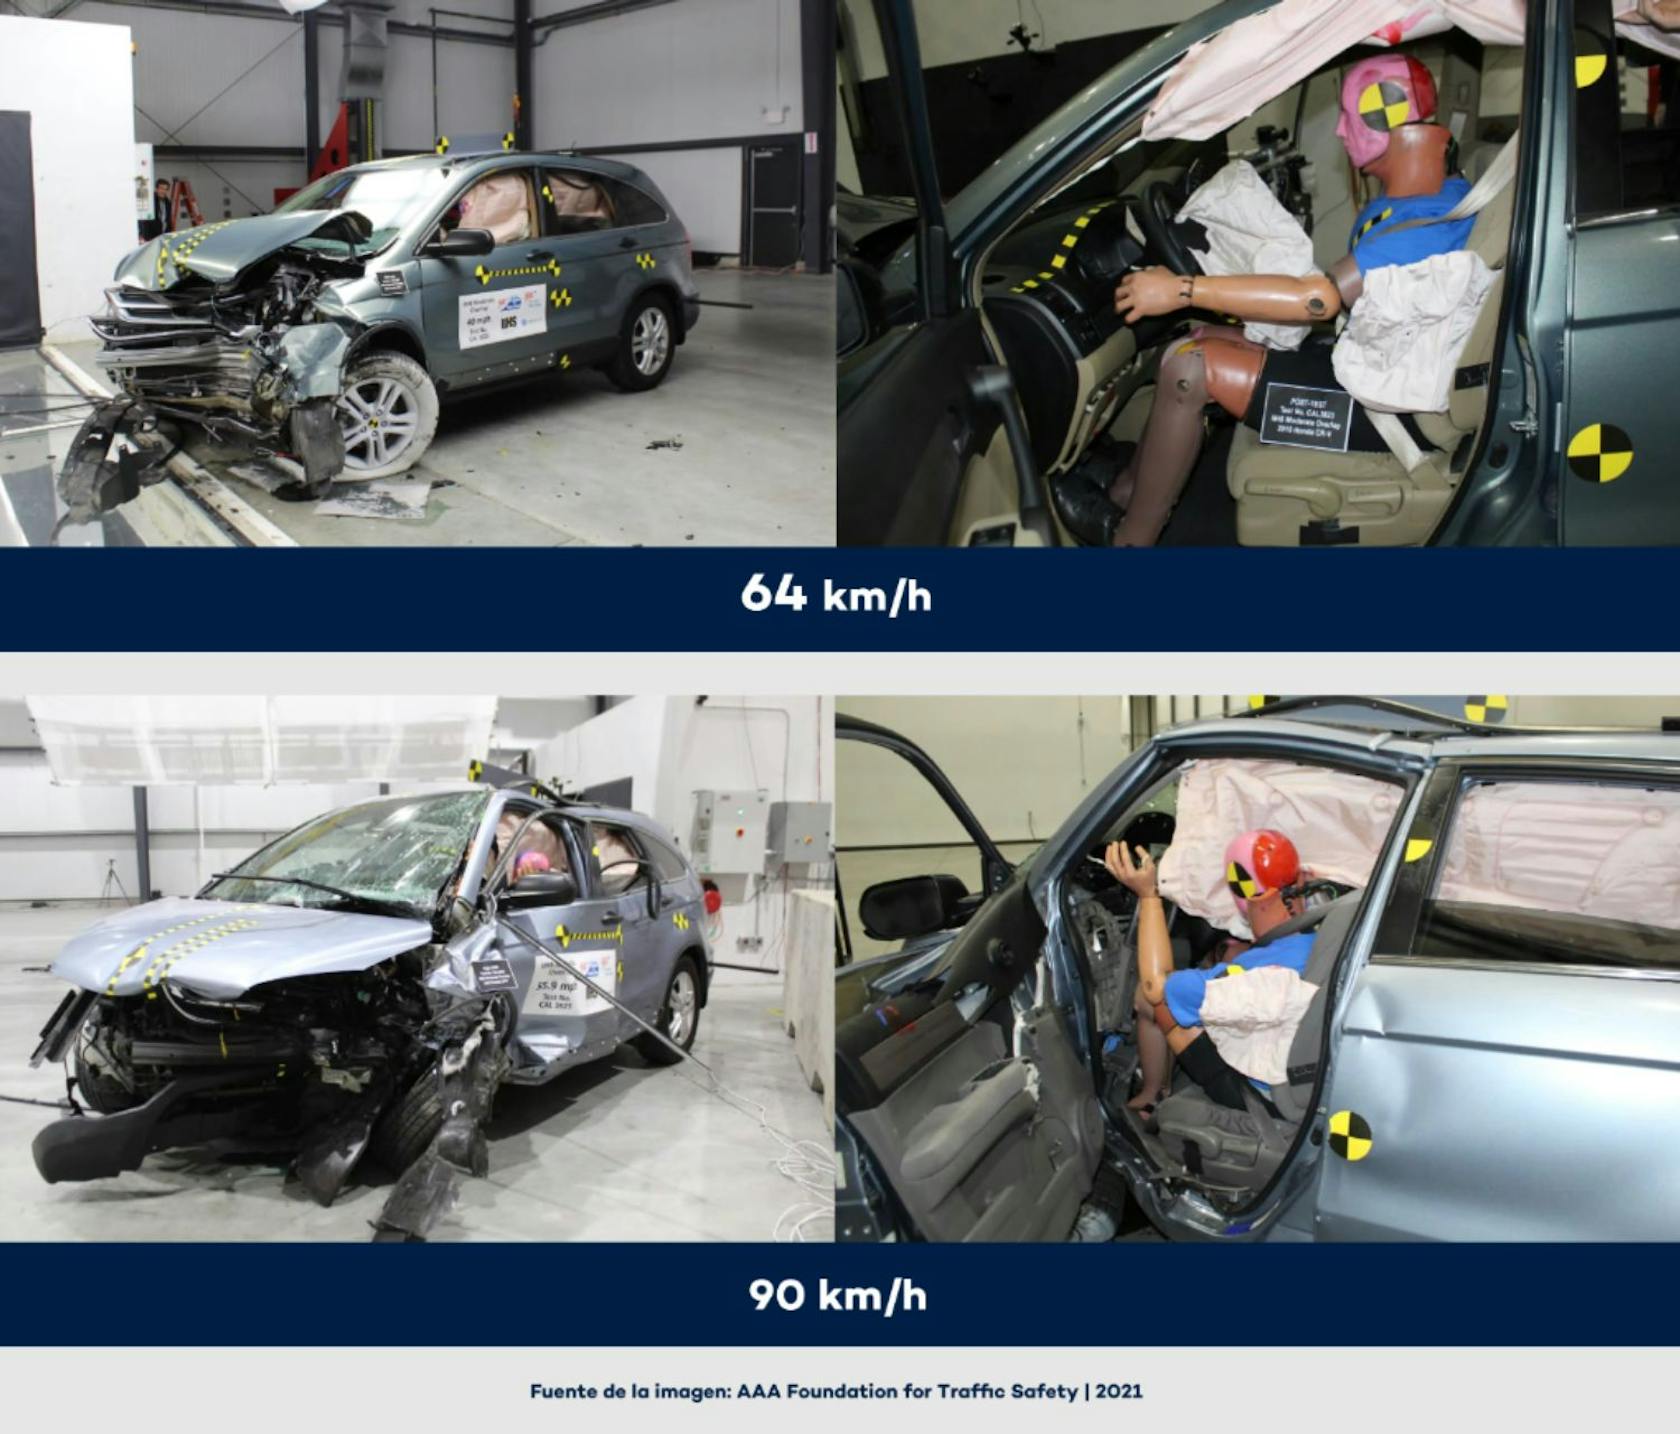 Cuatro imágenes de pruebas de choque. Dos imágenes muestran los efectos de un choque a 64 km/h; las otras dos muestran los efectos a una velocidad de 90 km/h.